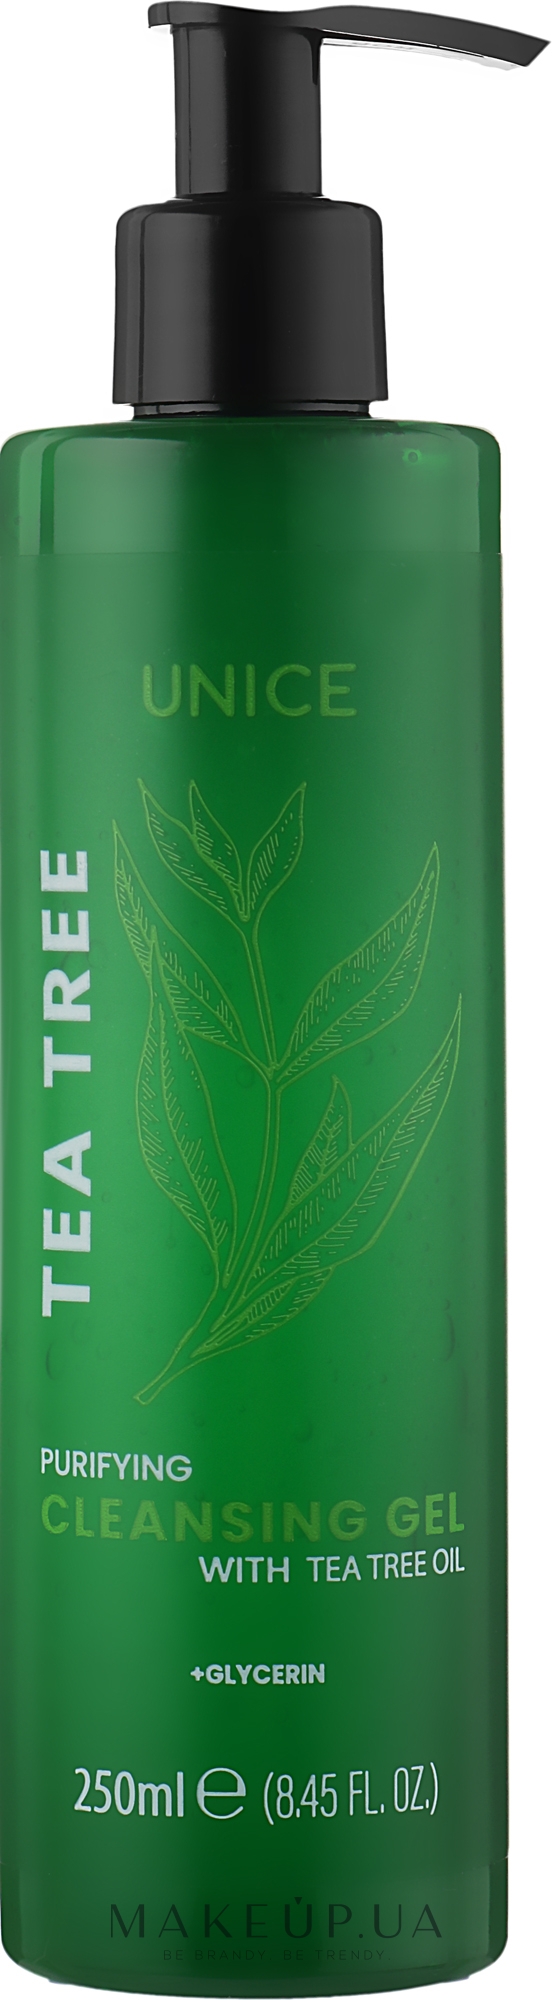 Очищающий гель для умывания с маслом чайного дерева - Unice Tea Tree Purifying Cleansing Gel — фото 250ml